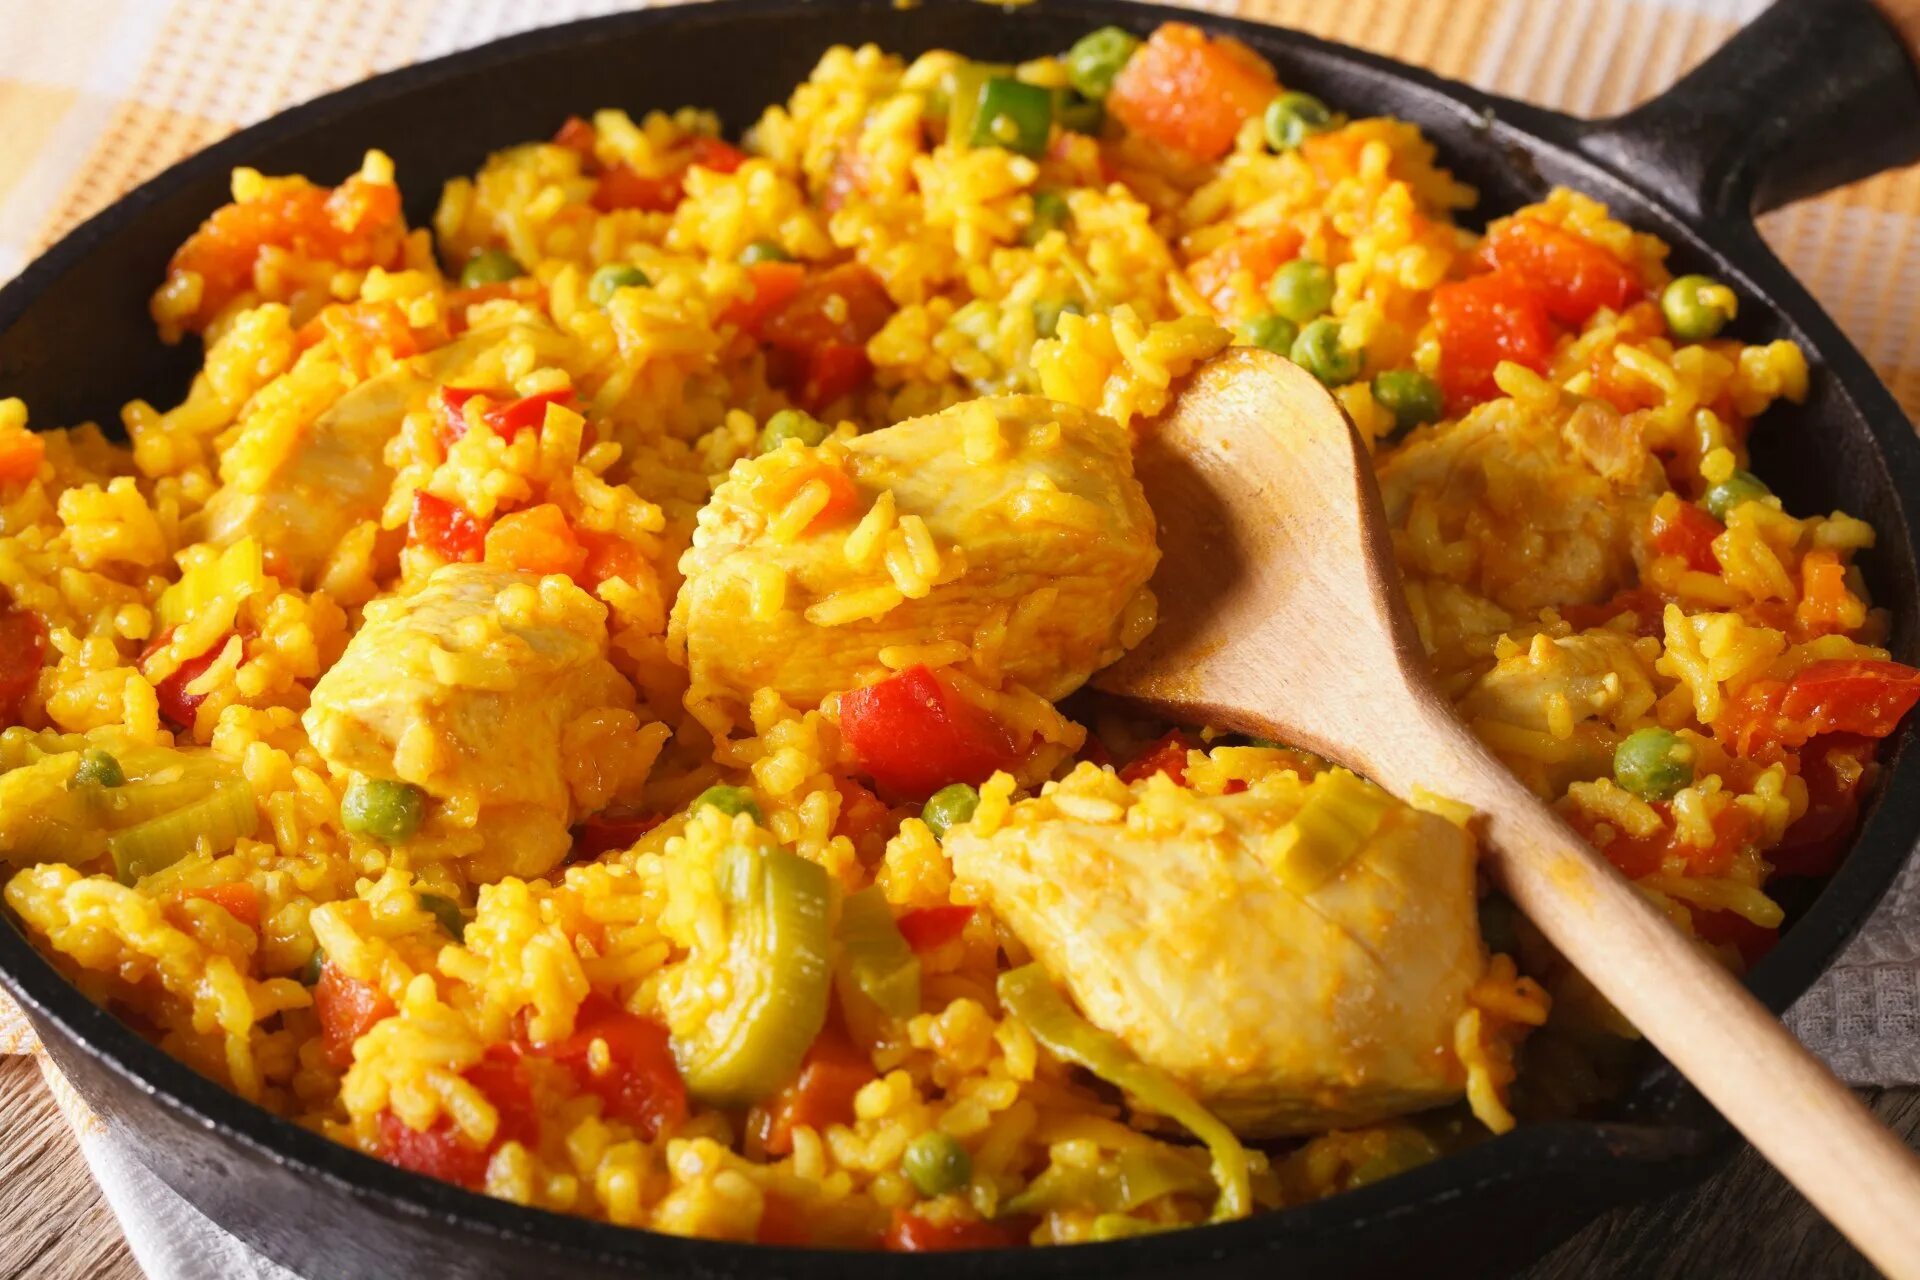 Аррос кон польо. Рис с курицей - arroz con pollo. Паэлья с курицей и овощами. Паэлья с курицей и овощами на сковороде.